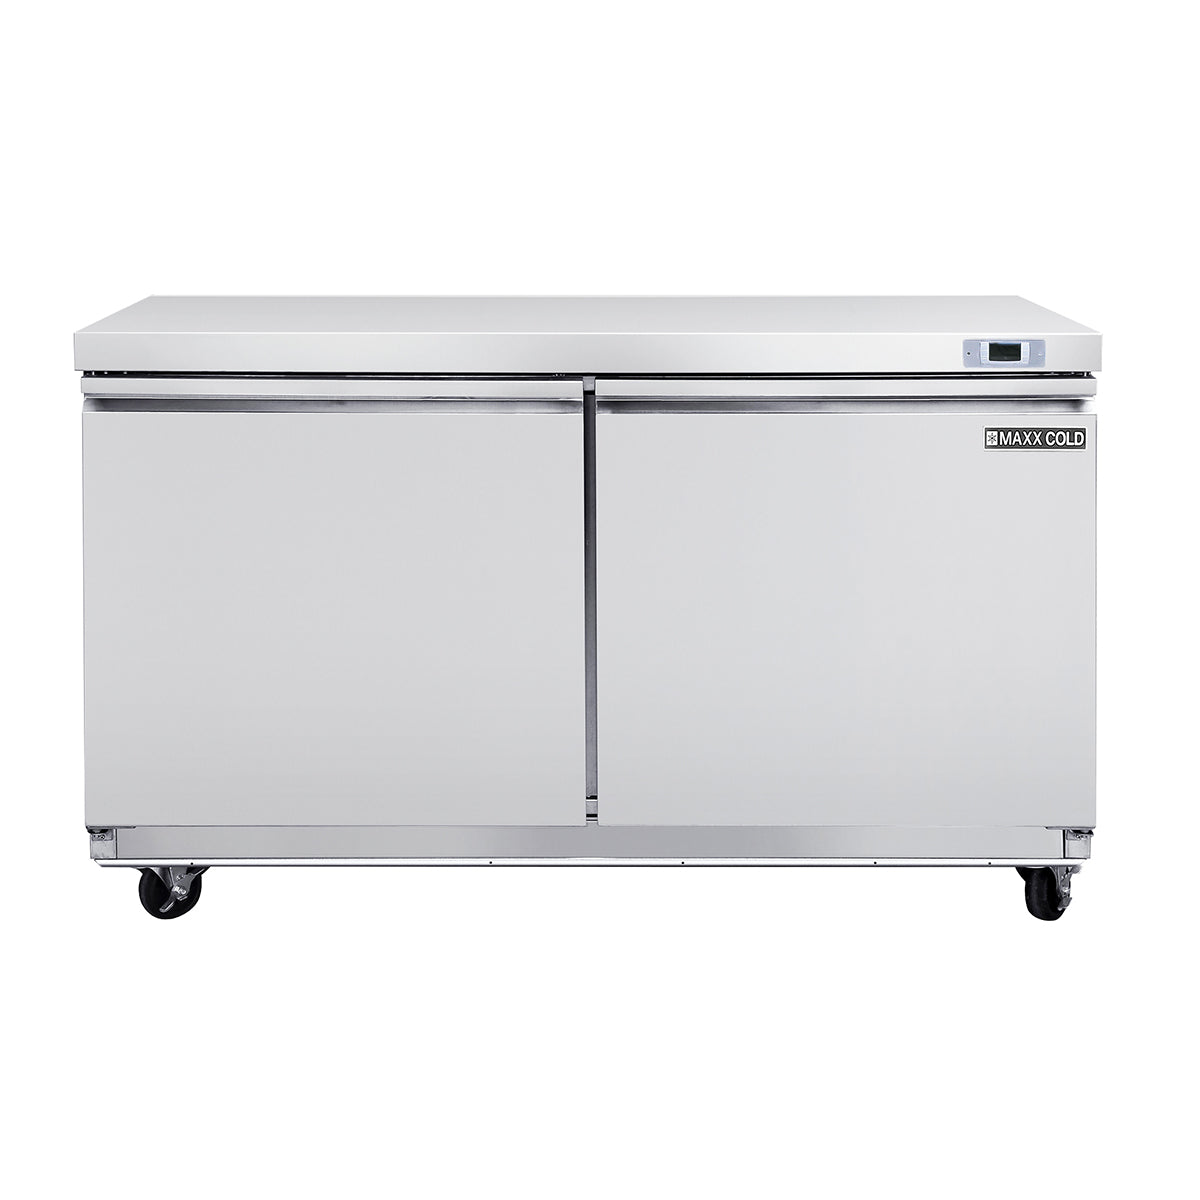 MXSF60UHC Maxx Cold Double Door Undercounter Freezer, 14.1 cu. ft. Storage Capacity, in Stainless Steel